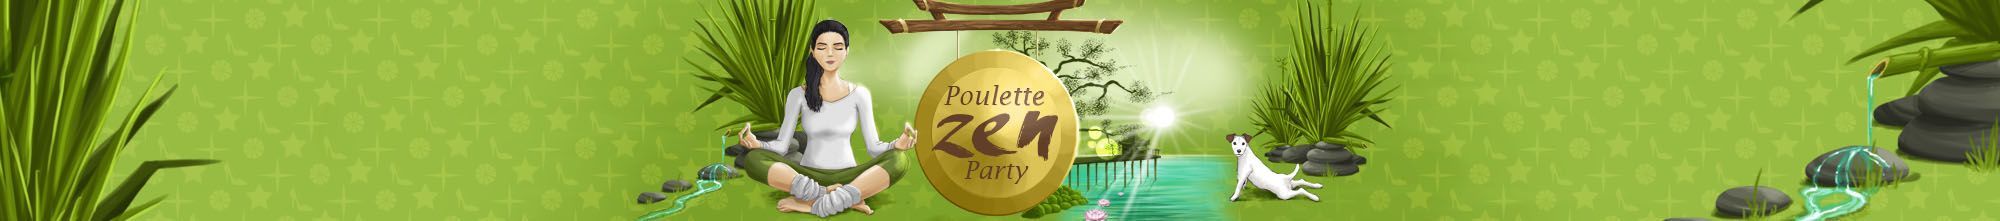 Poulette Zen Party